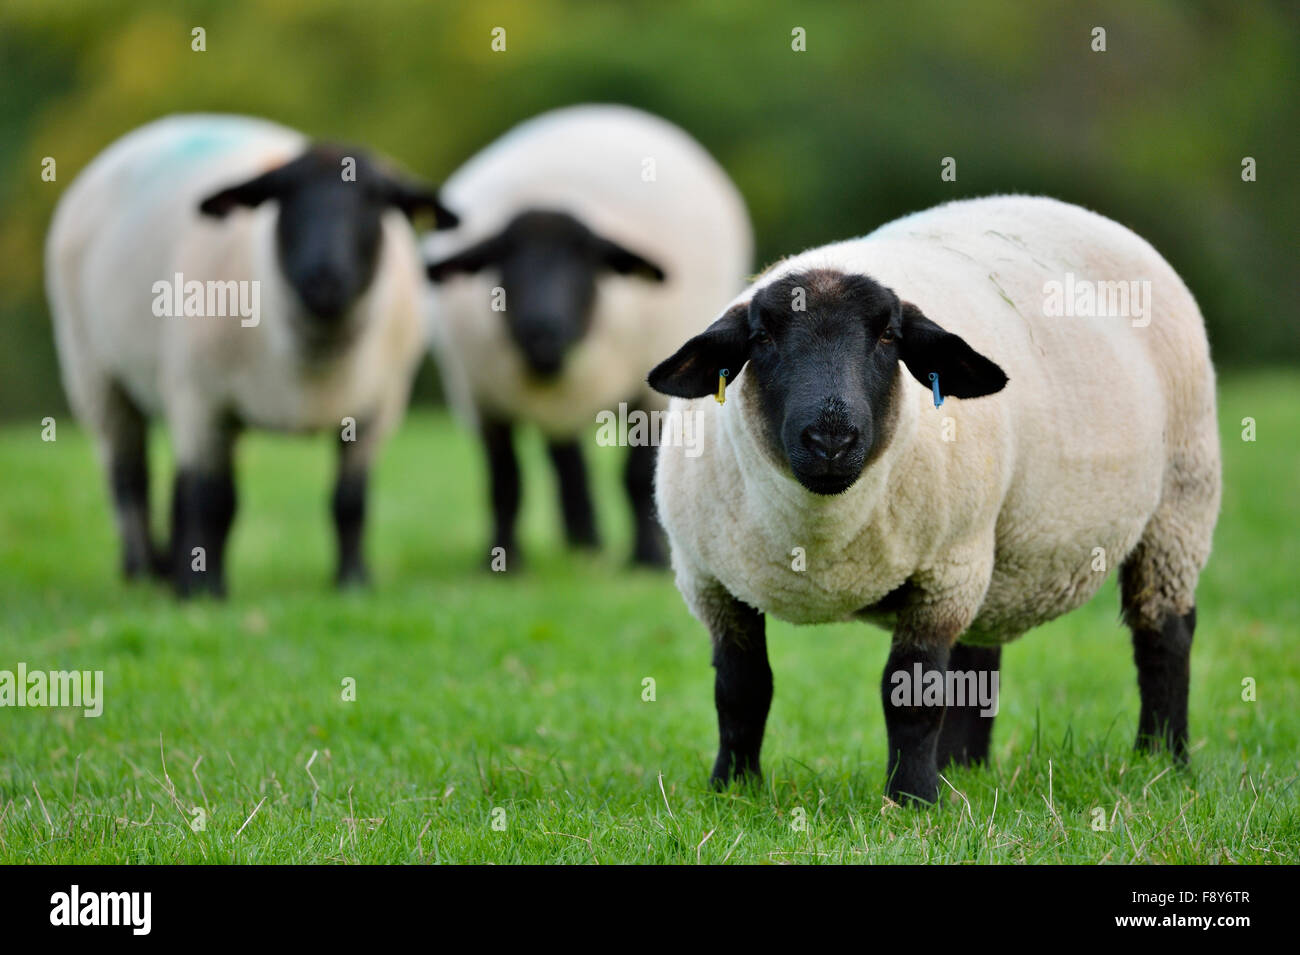 Sheep (Ovis aries), UK Stock Photo